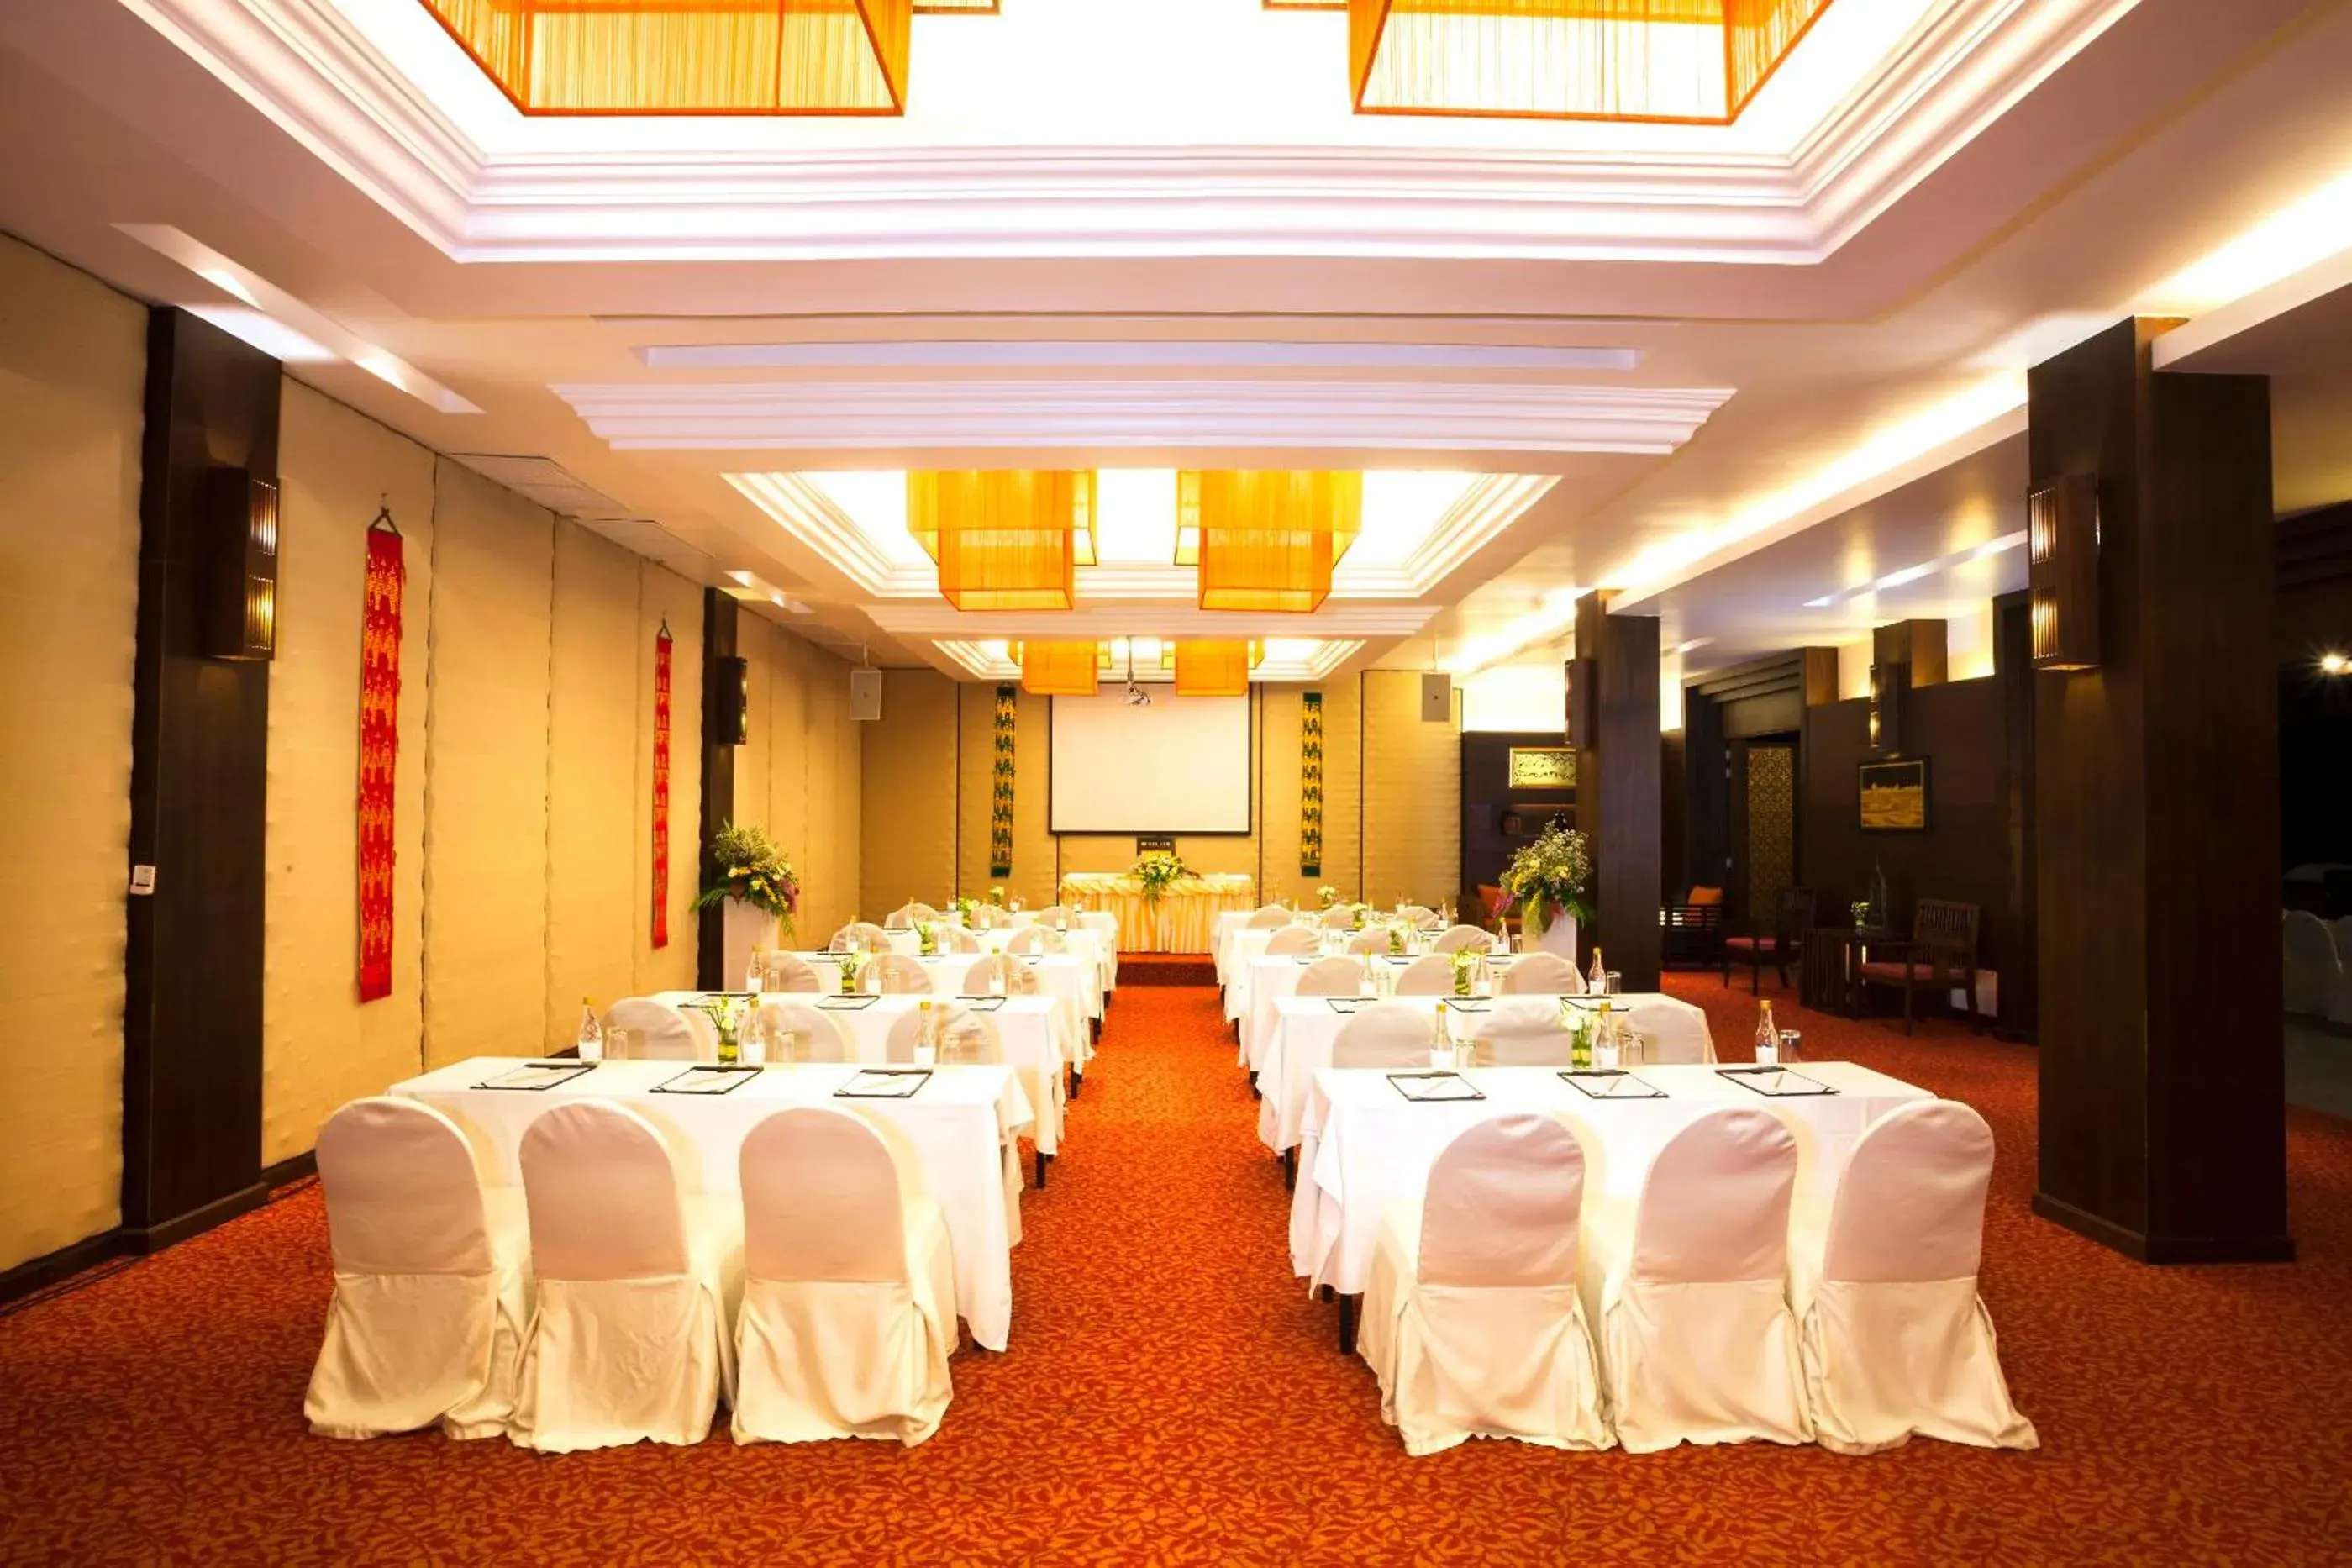 Business facilities, Banquet Facilities in Panviman Chiang Mai Spa Resort